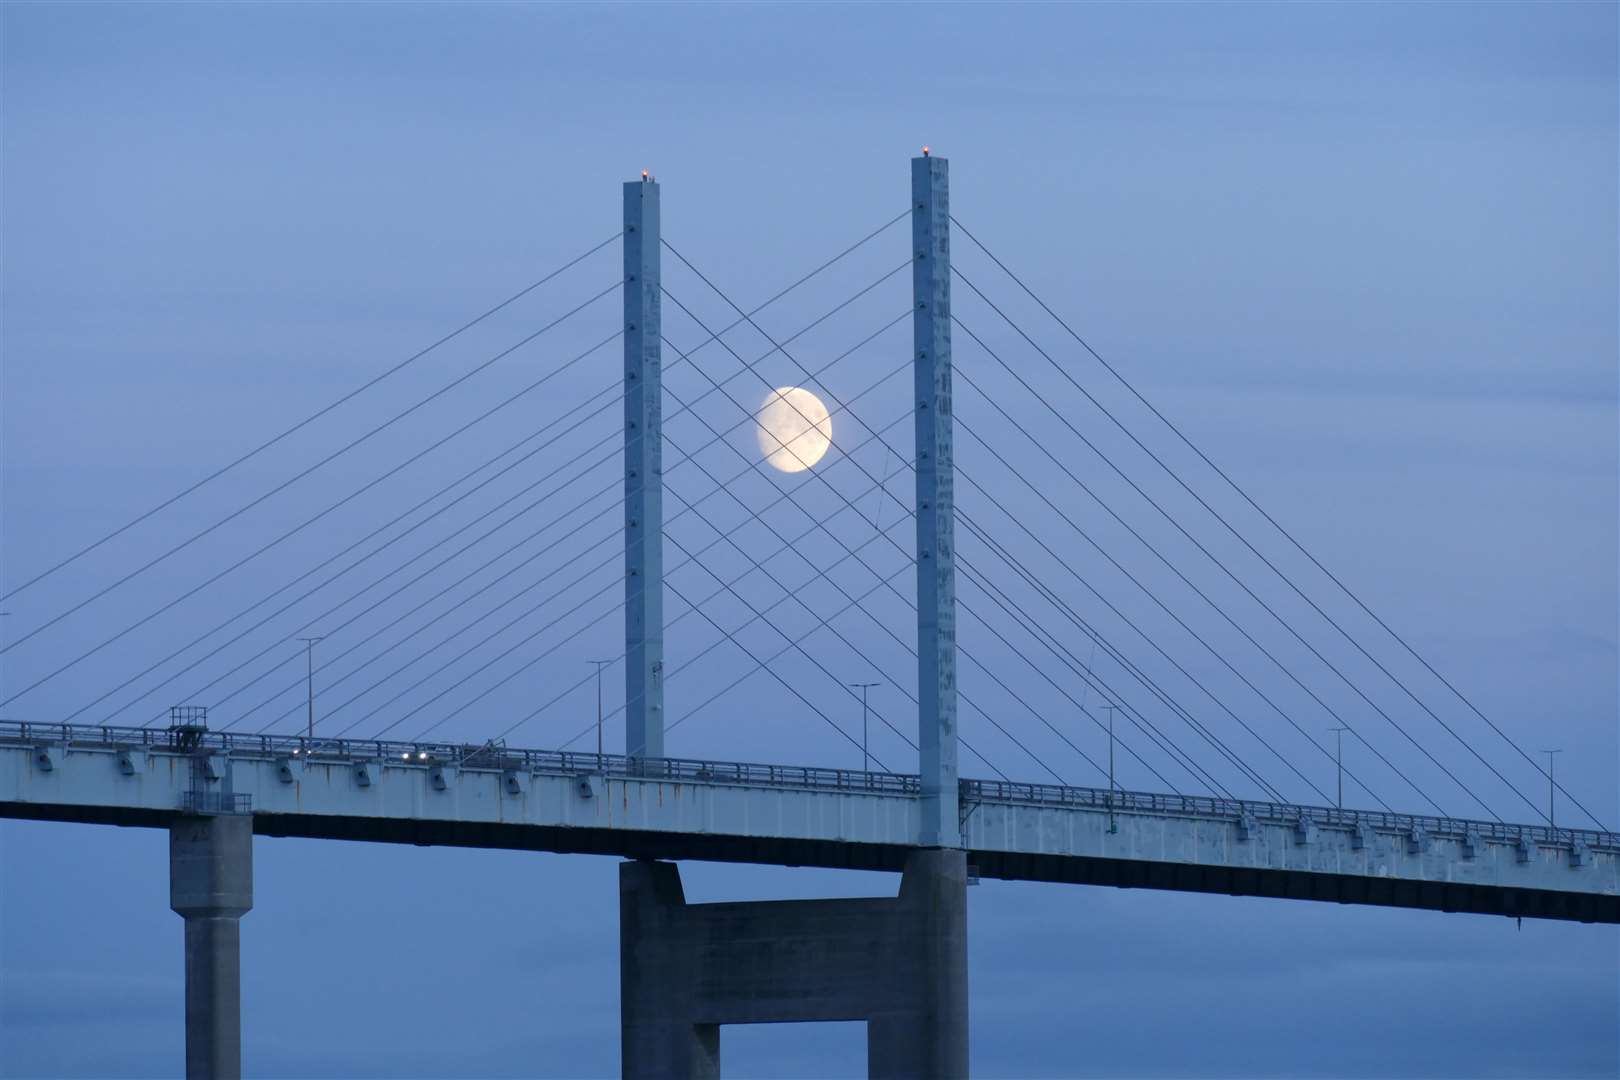 Moon over the Kessock Bridge.